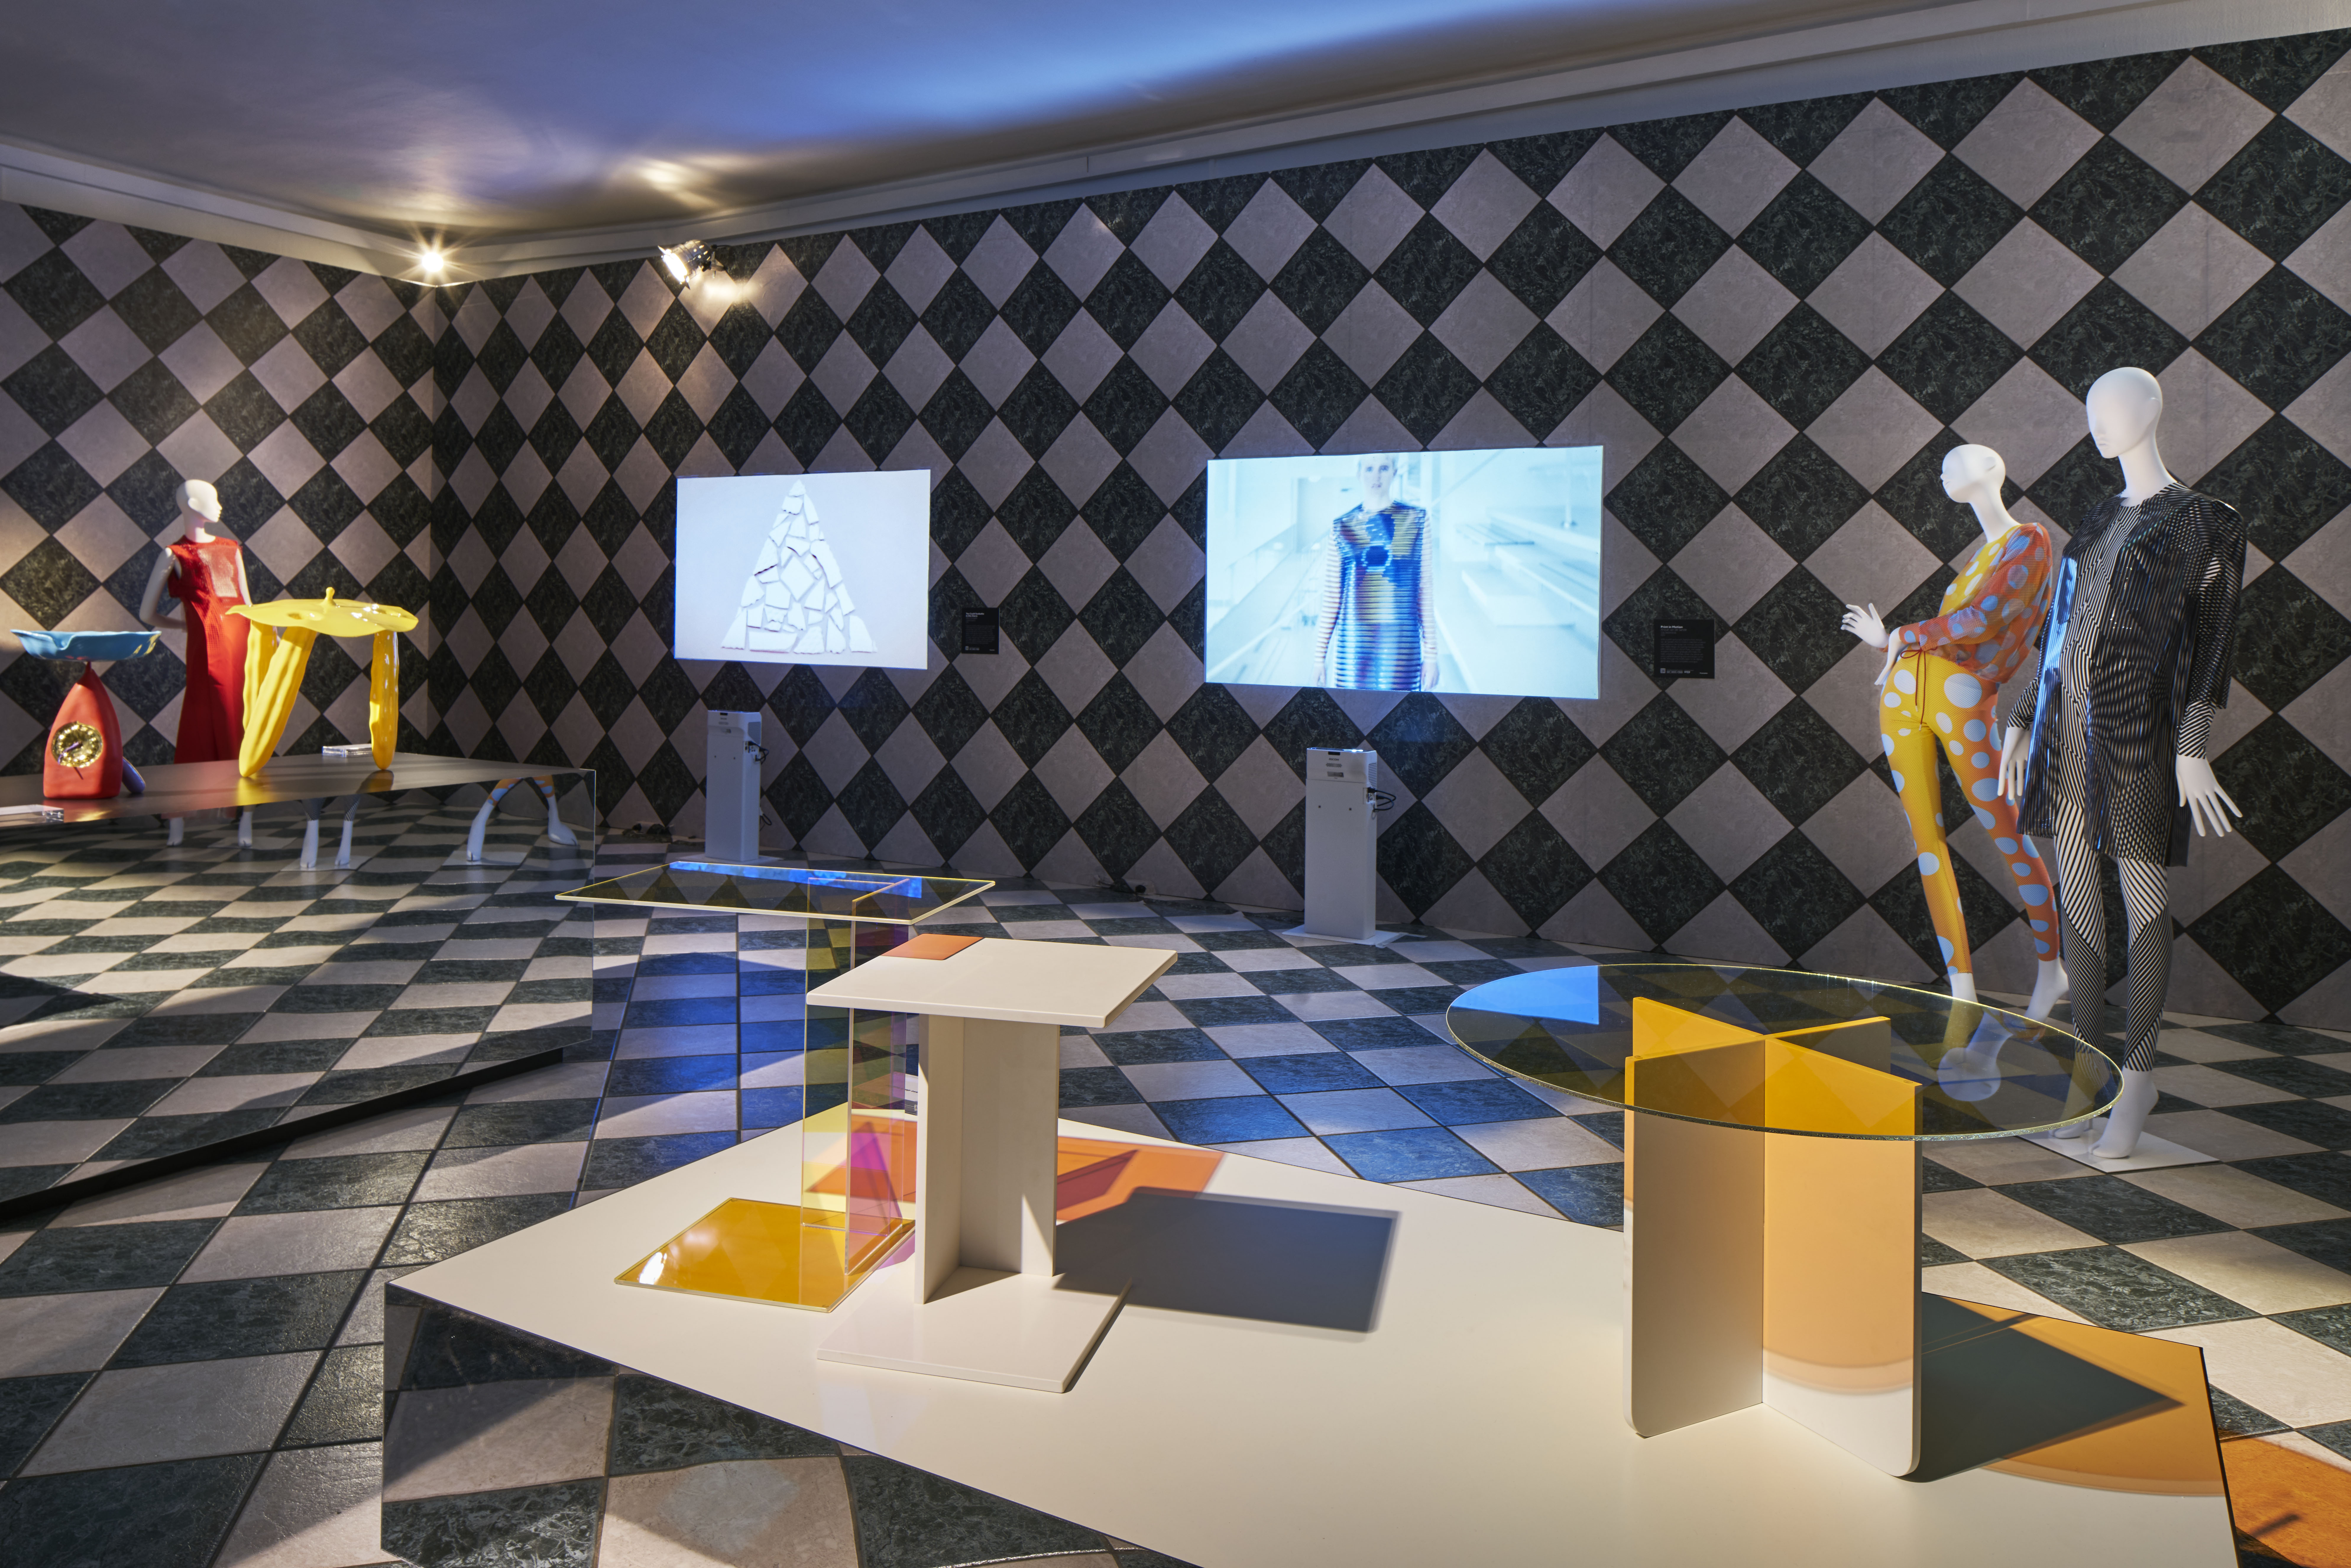 Kukka Tische in Ausstellung  "Frame" auf Möbelmesse Mailand